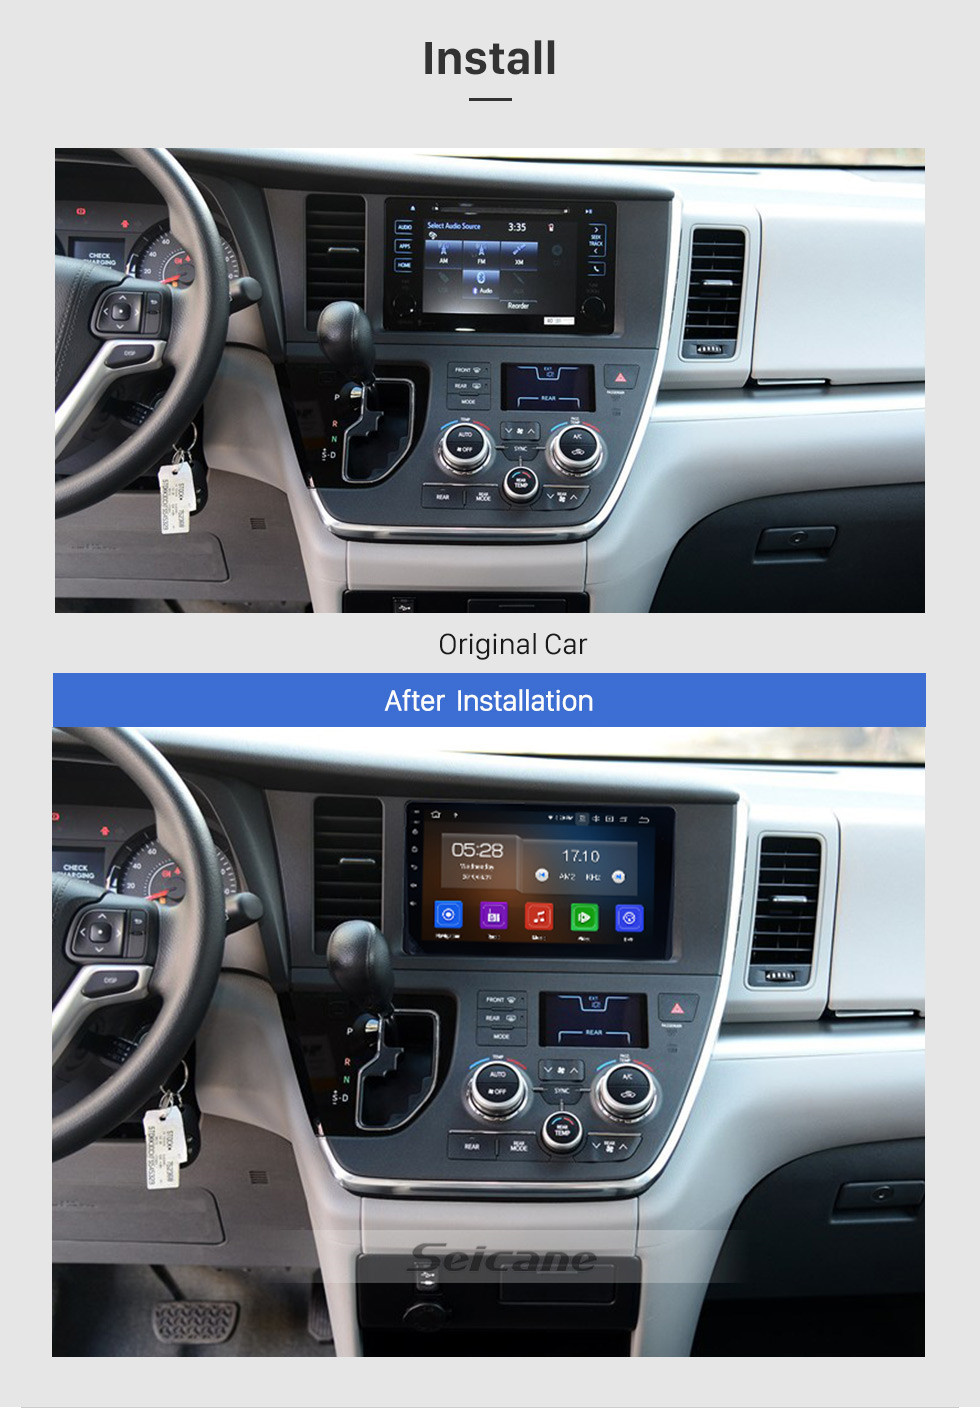 Seicane 9 Polegada Aftermarket Android 13.0 Rádio sistema de Navegação GPS Para 2015-2018 Toyota Sienna com Tela de Toque Capacitivo TPMS DVR OBD II Apoio para a Cabeça Monitor de Controle USB SD Bluetooth 3G WiFi Vídeo AUX câmera Traseira